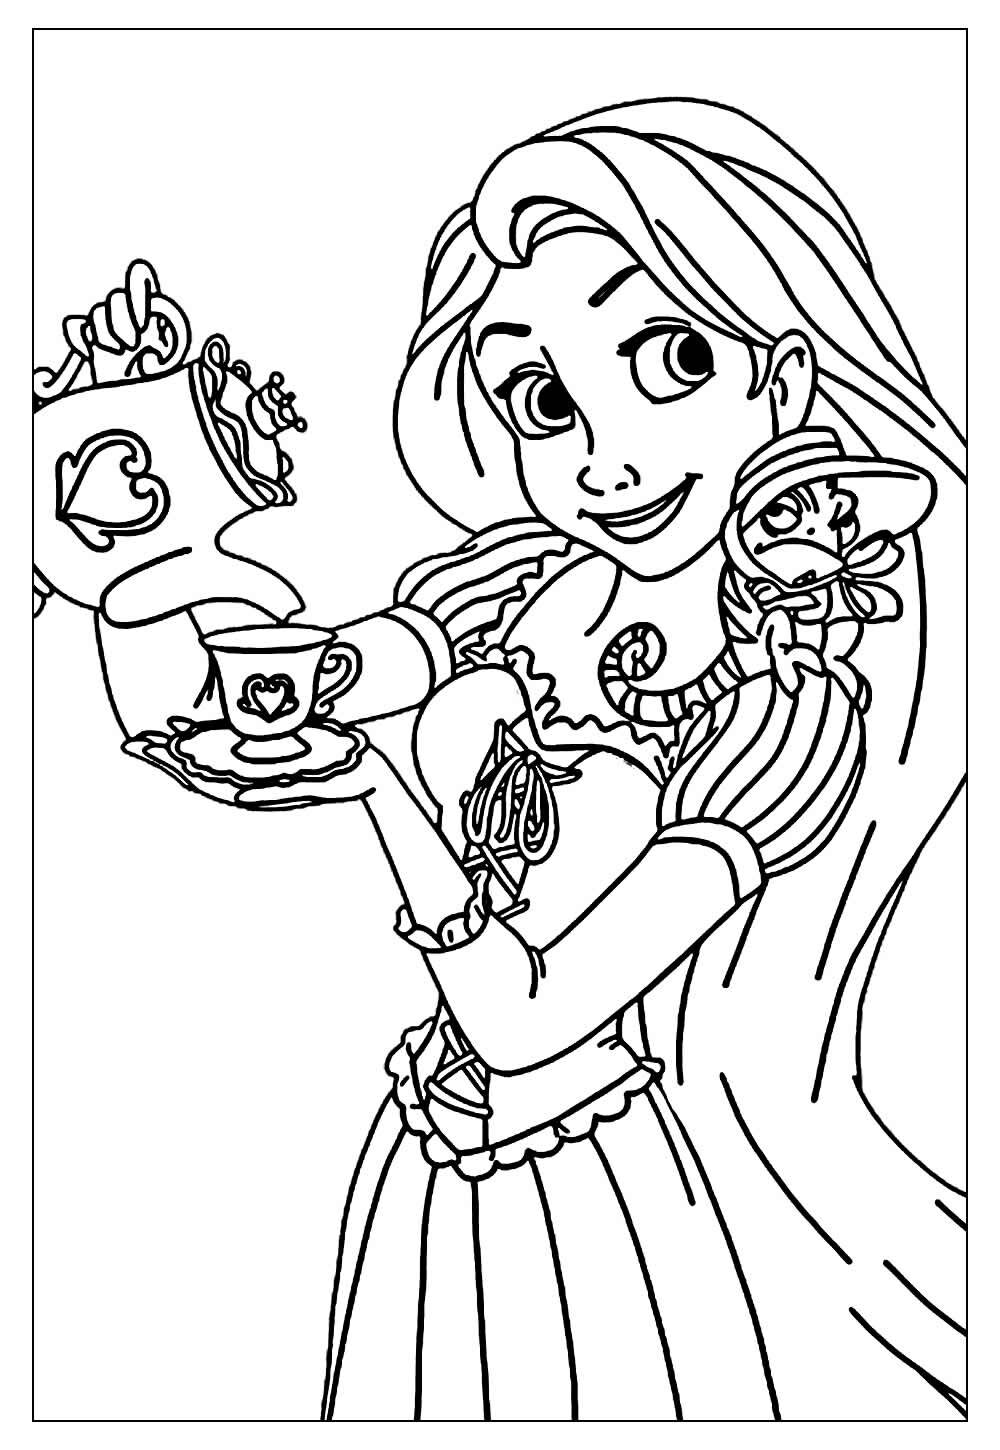 Desenhos Para Pintar - Desenhos de natal com as princesas da Disney para  colorir e pintar:  -disney-de-natal-desenhos-para-colorir-imprimir-e-pintar/